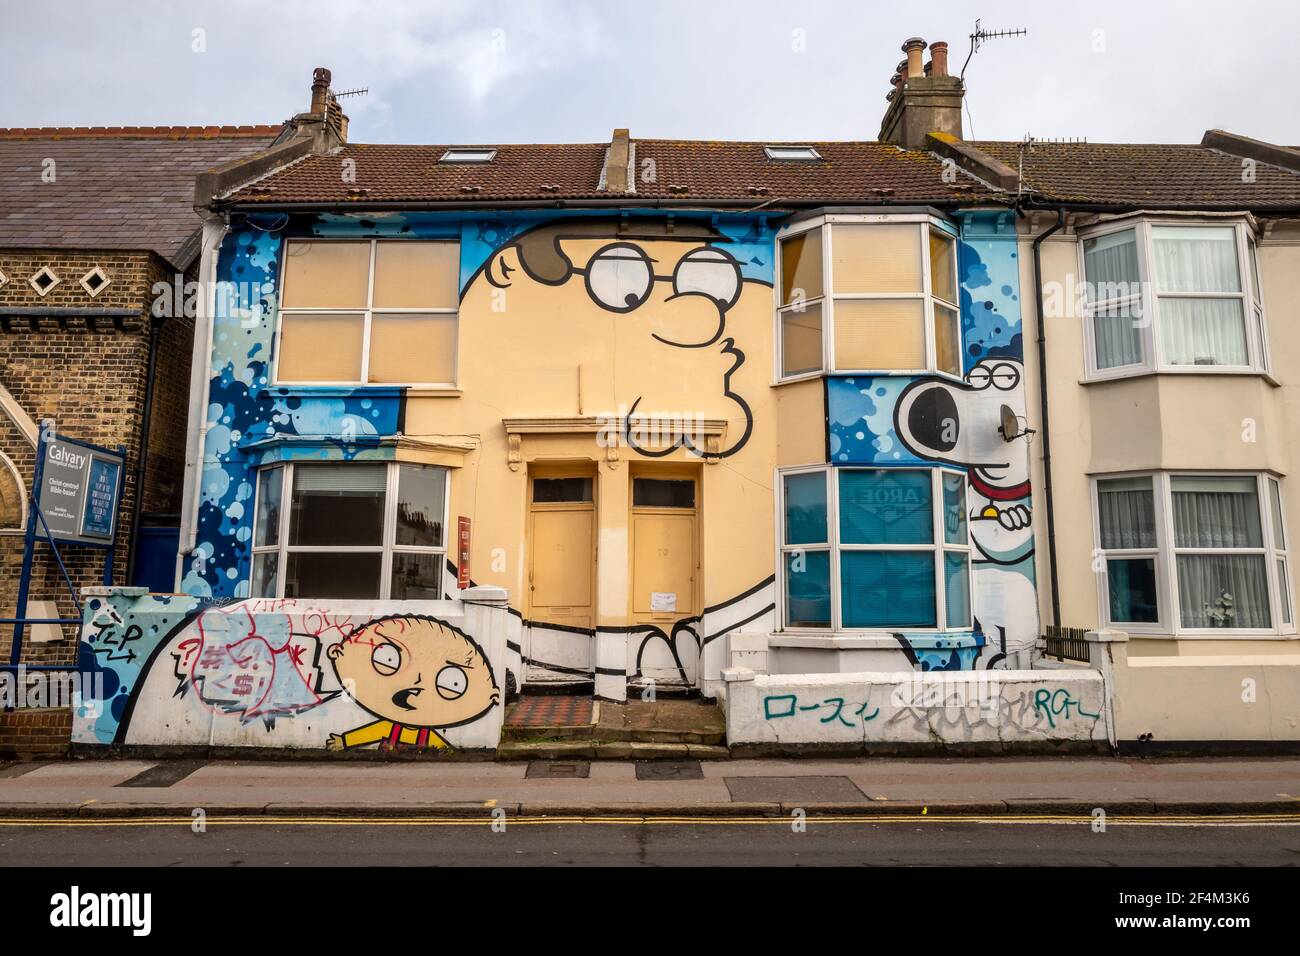 Brighton, le 20 février 2021: Une maison peinte d'après le style de l'émission de télévision américaine Family Guy Banque D'Images